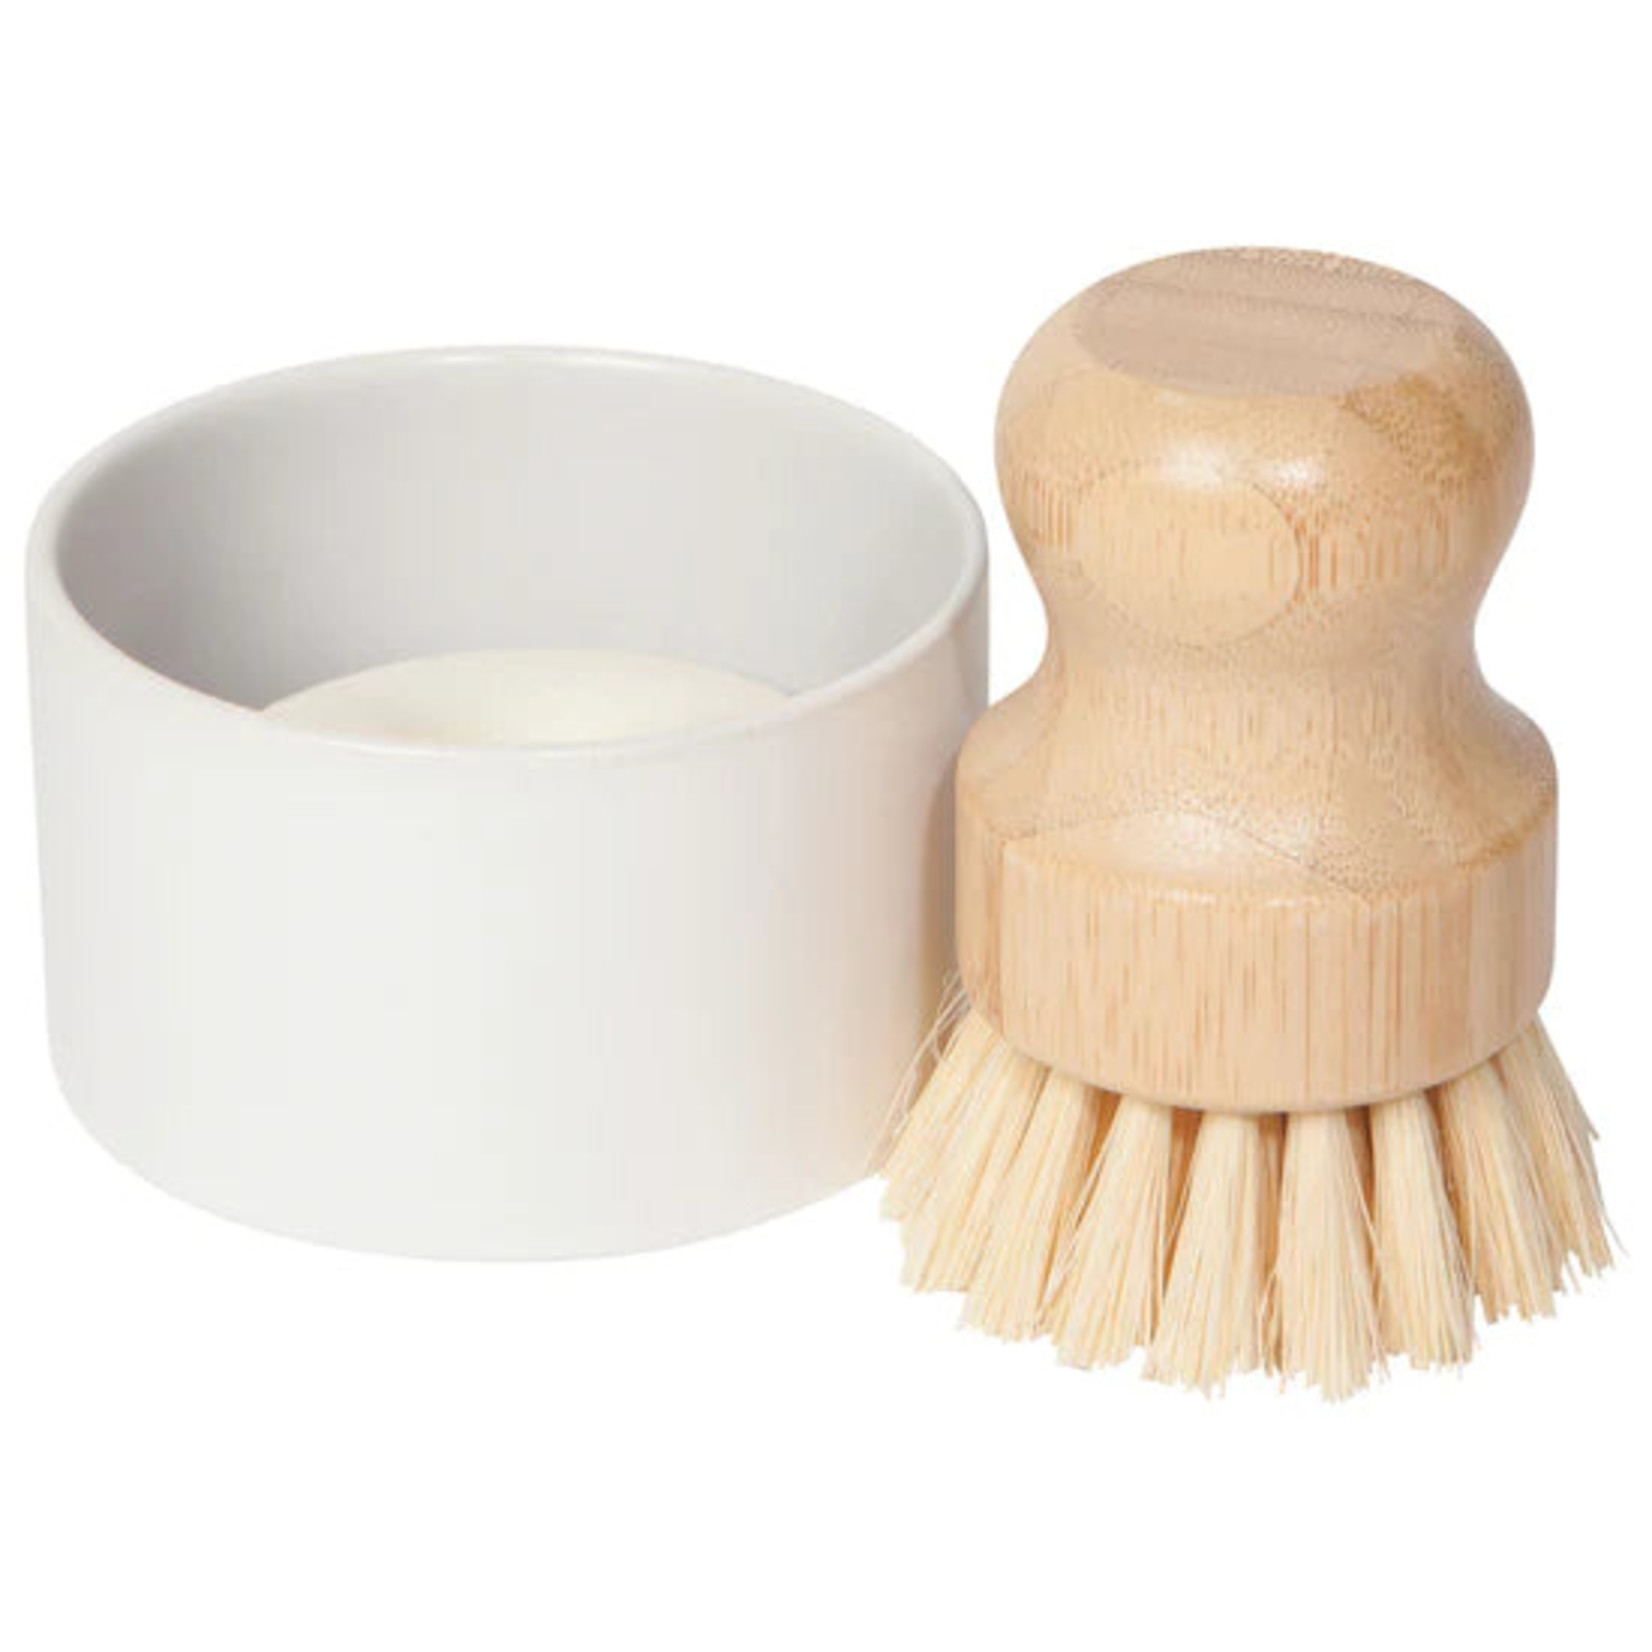 Maison Dish Brush + Soap + Holder | Set of 3